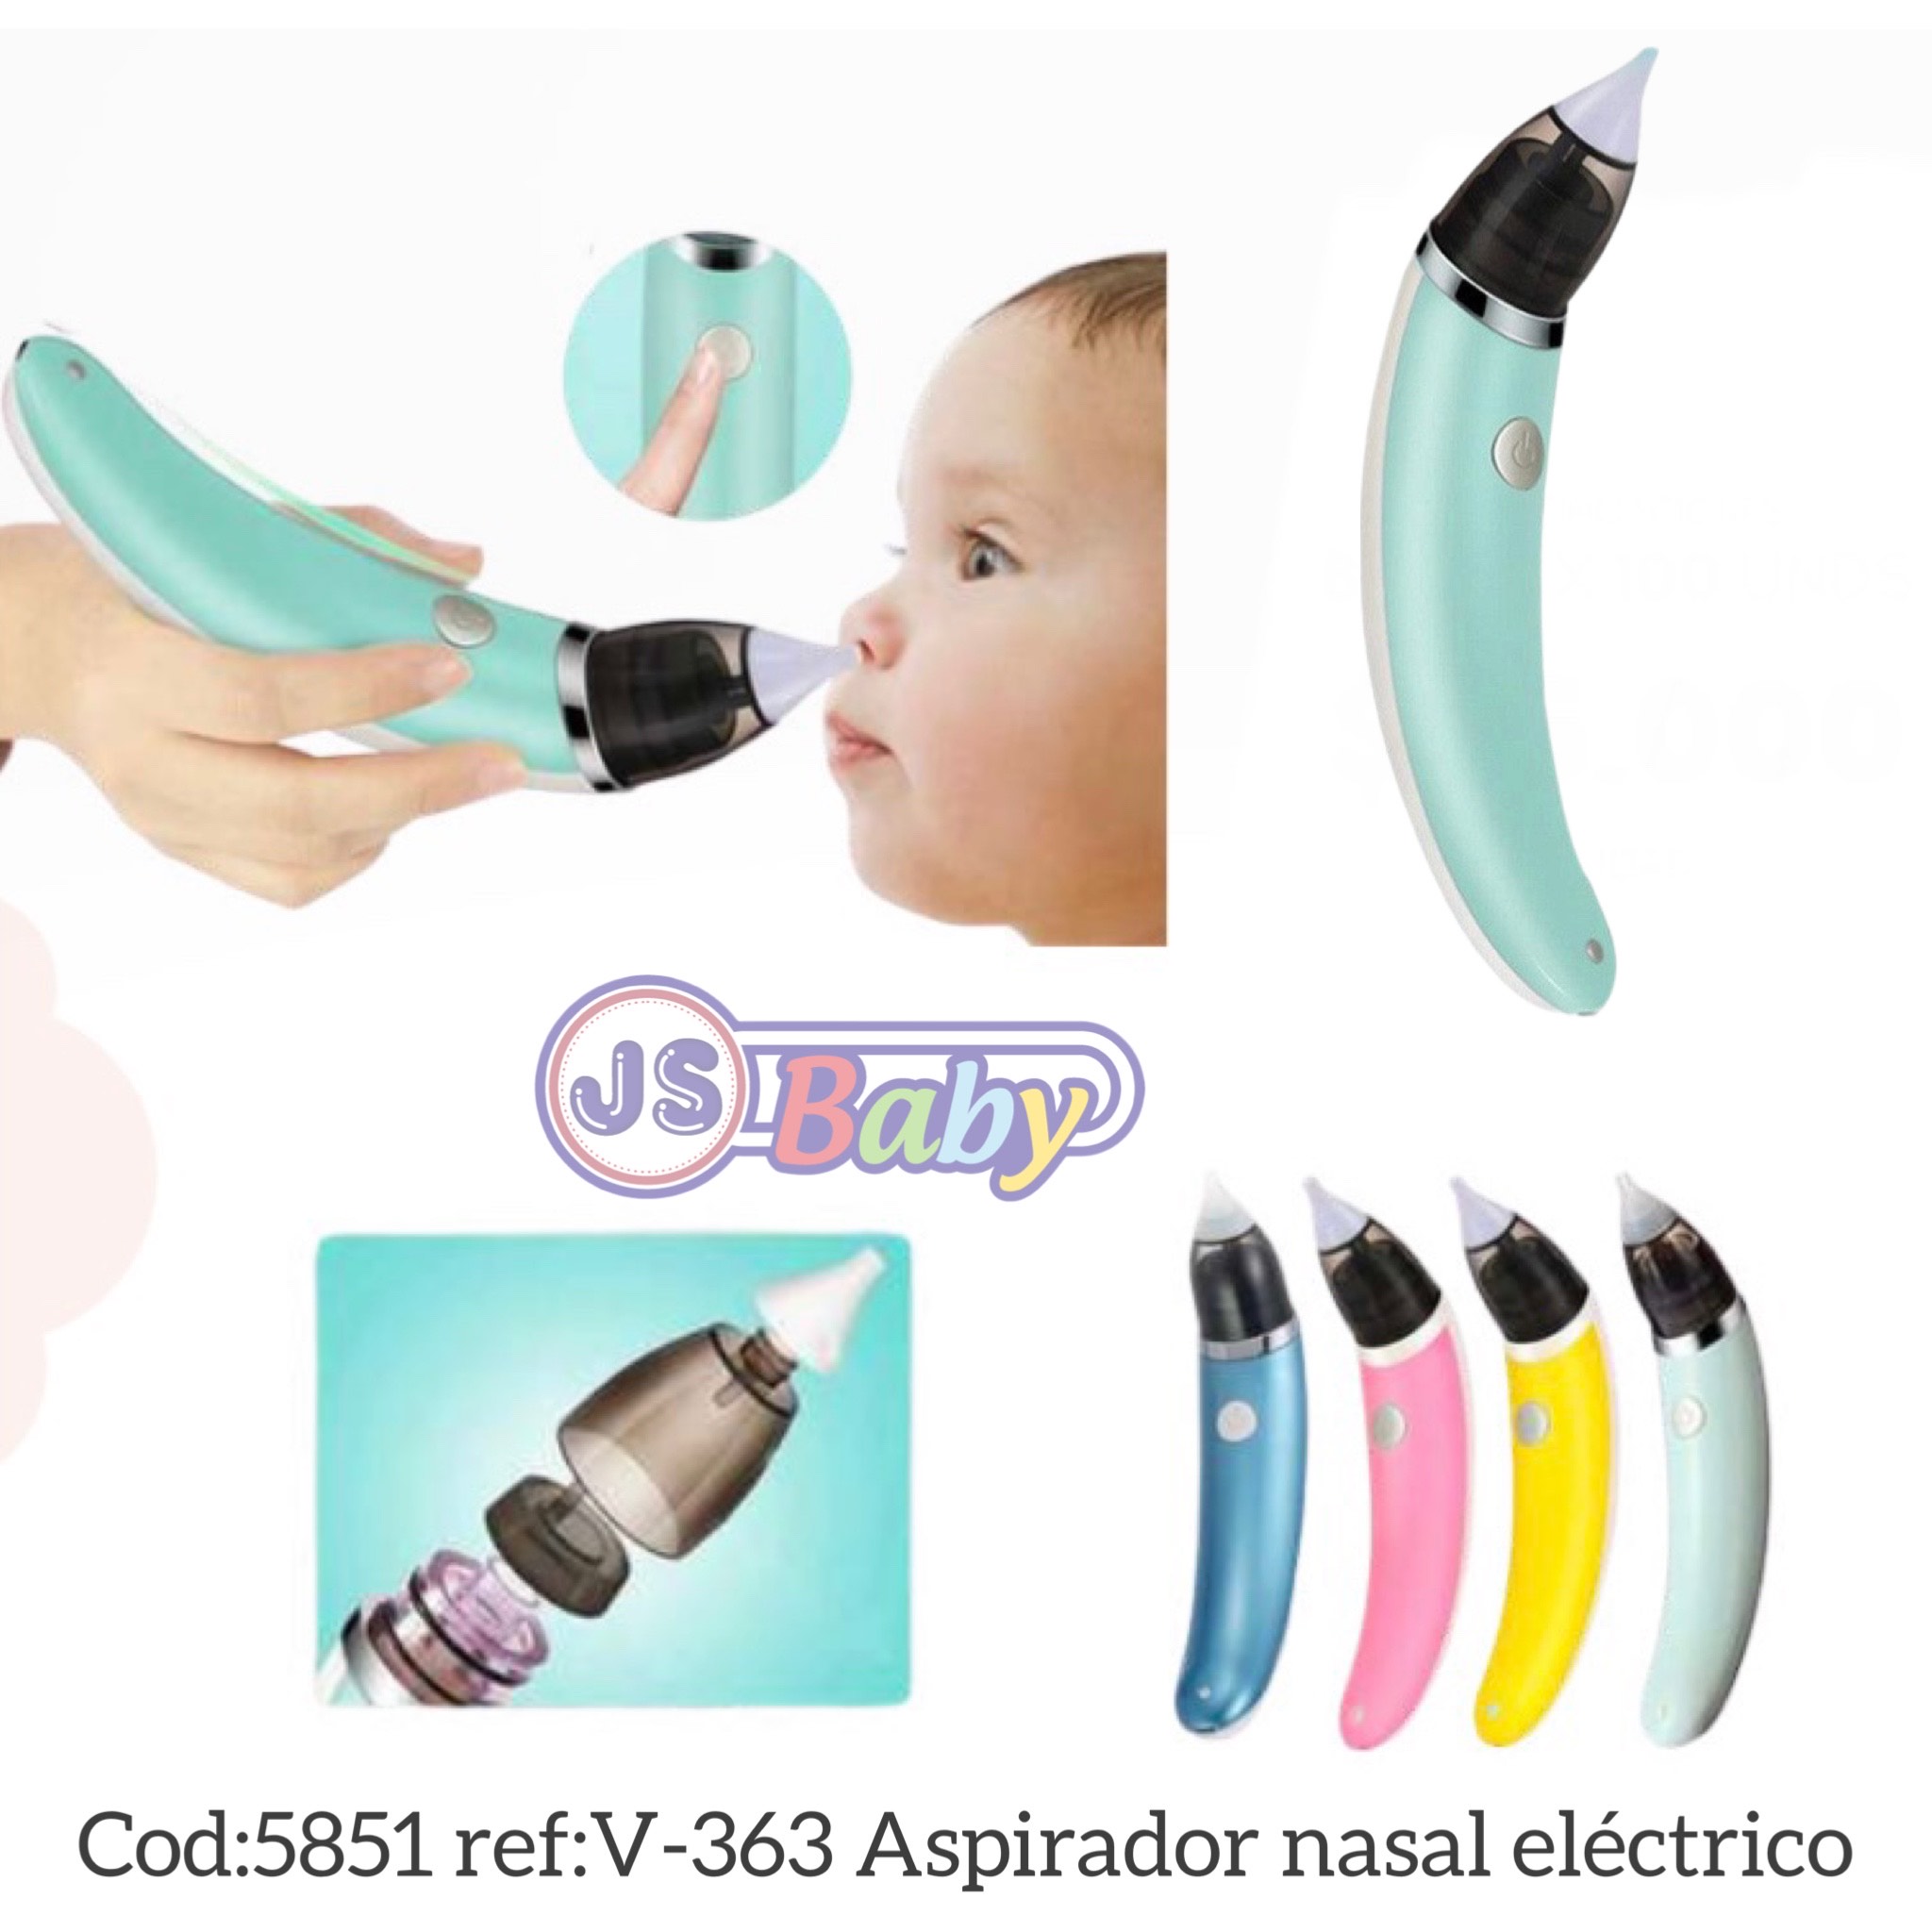 Aspirador Nasal Eléctrico Para Bebés Y Niños ref:V-363 -5851